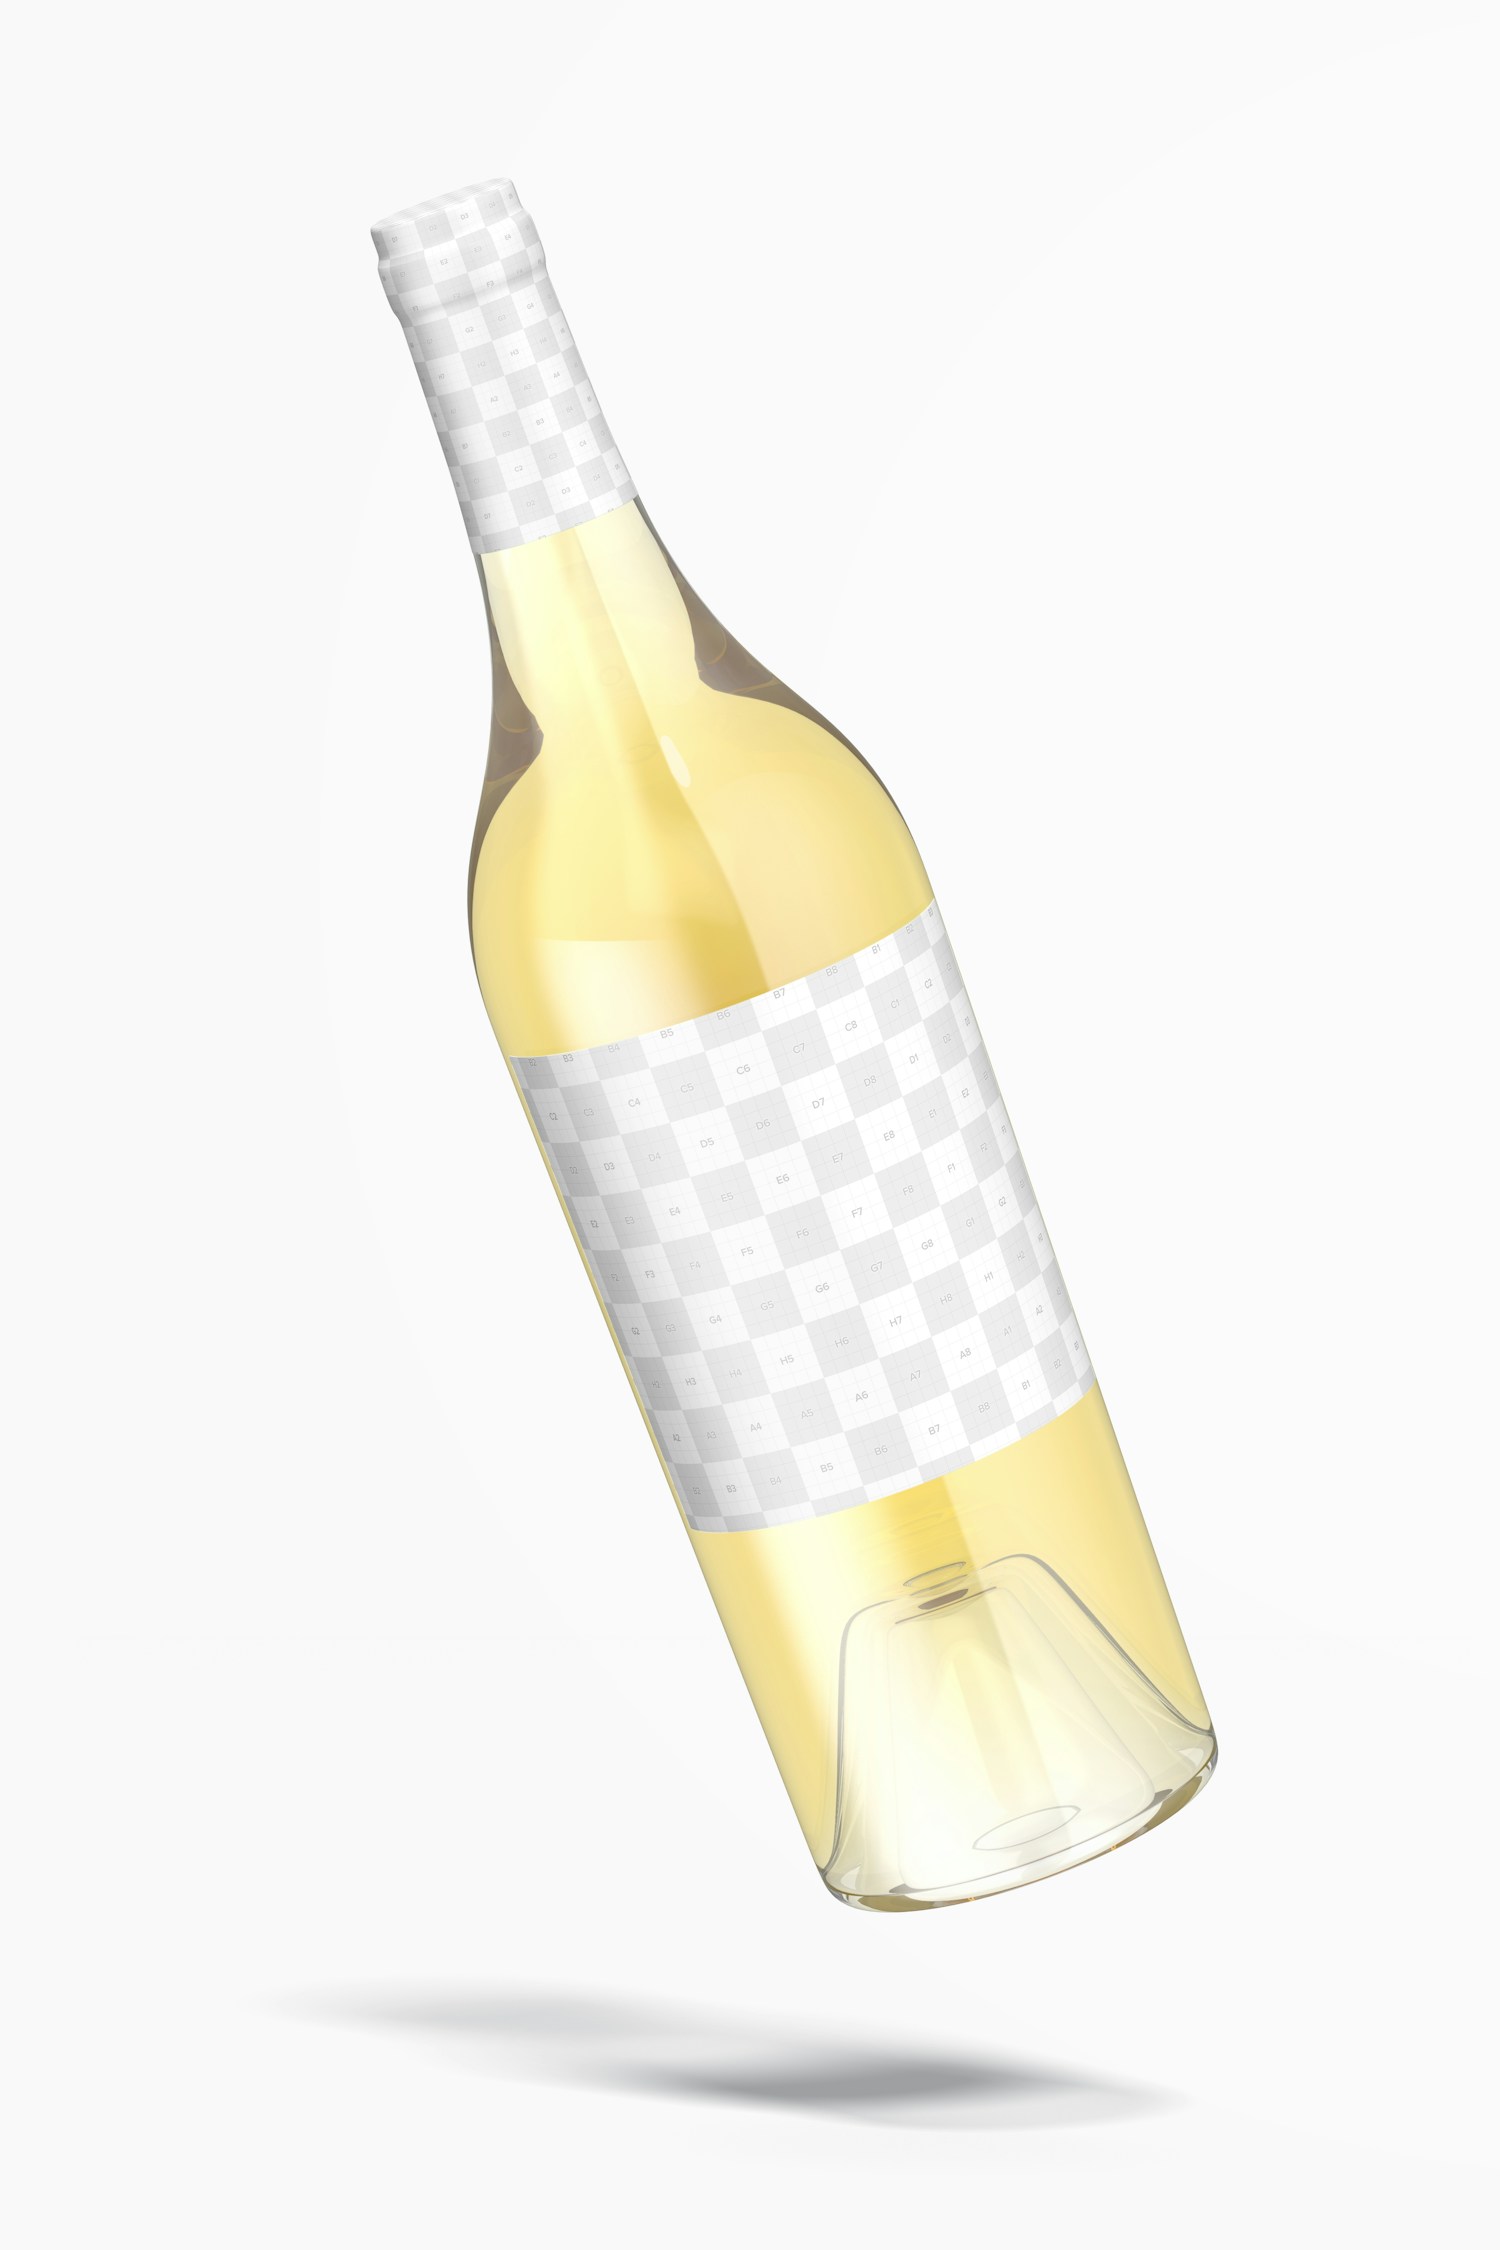 Clear Glass White Wine Bottle Mockup, Falling